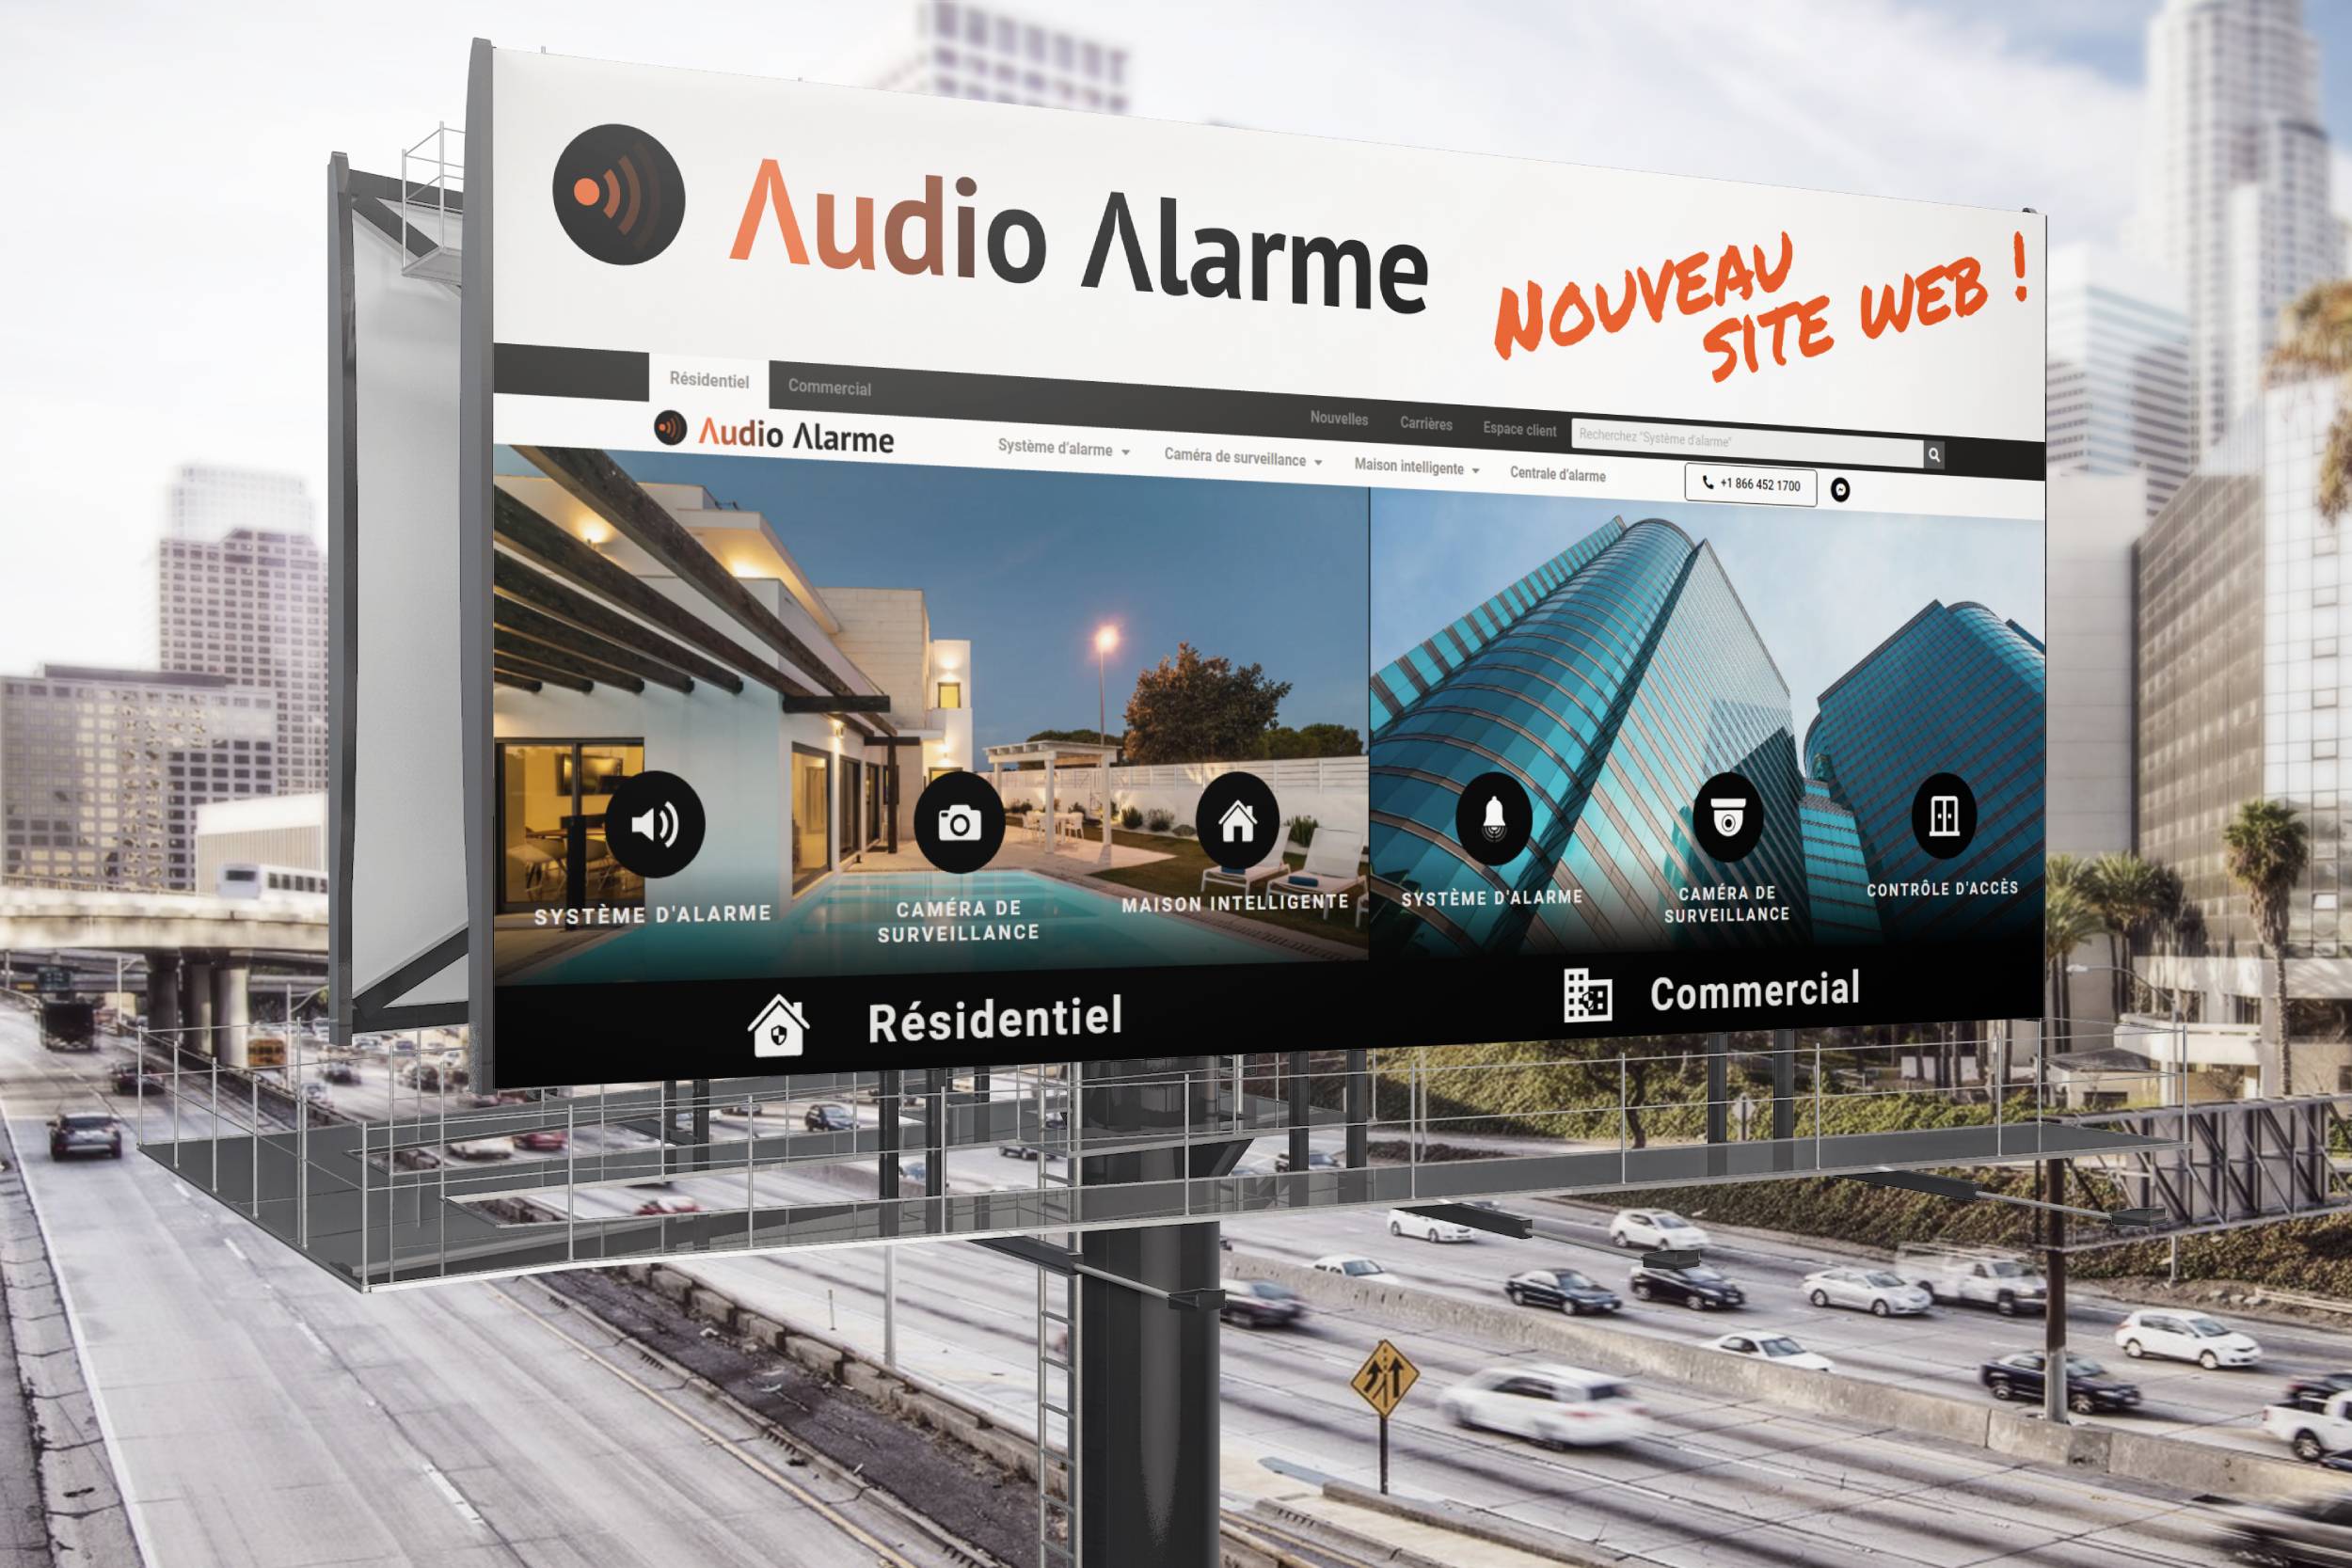 Billboard Nouveau site web Audio Alarme